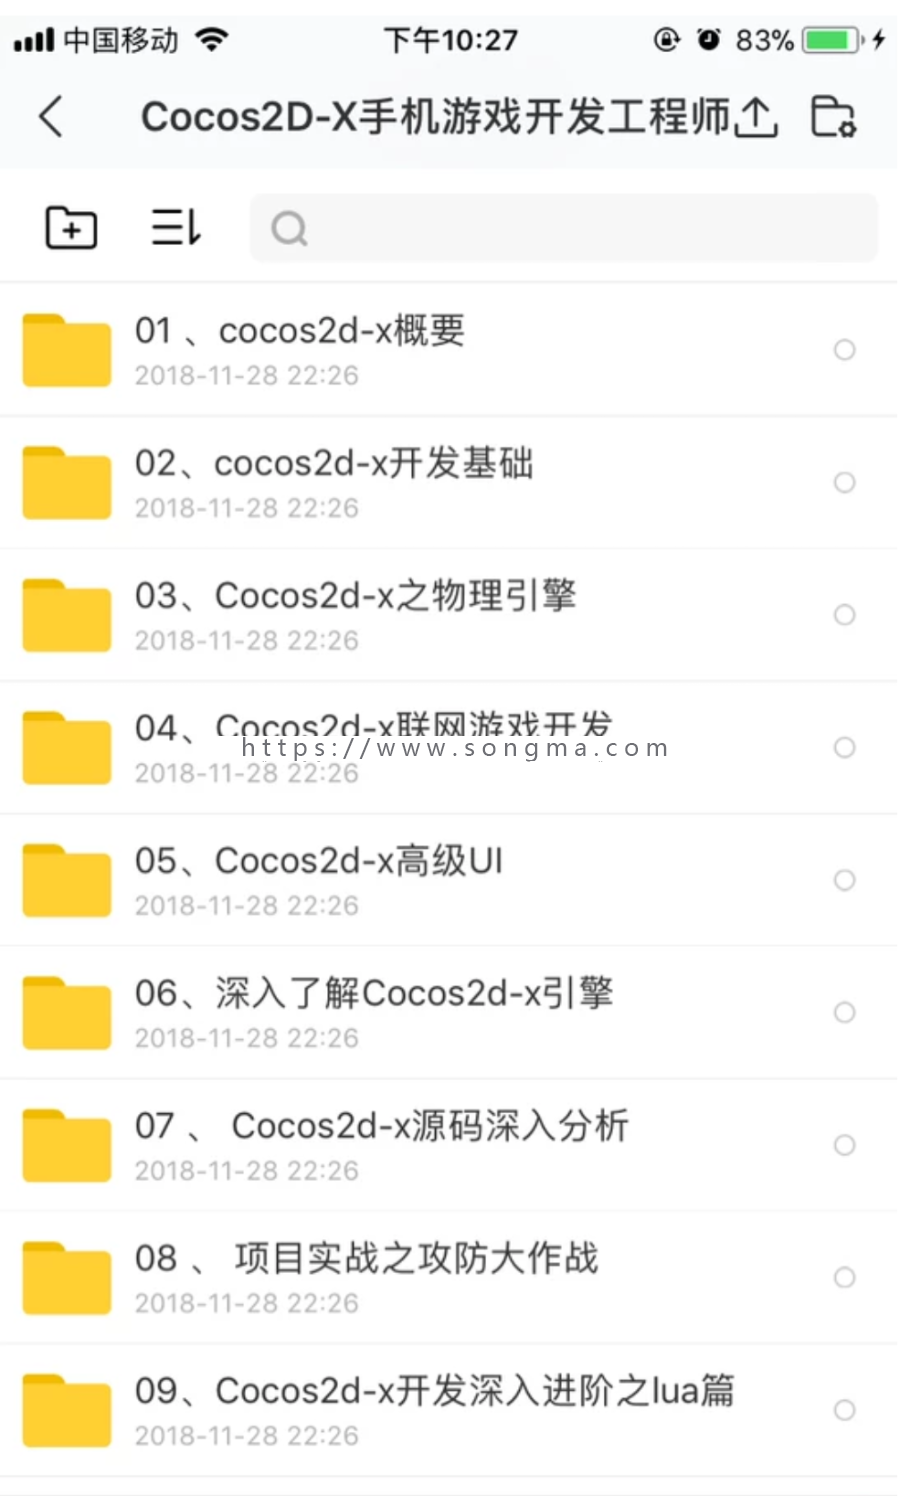 Cocos2D-x 全套视频教程 瑁子出品